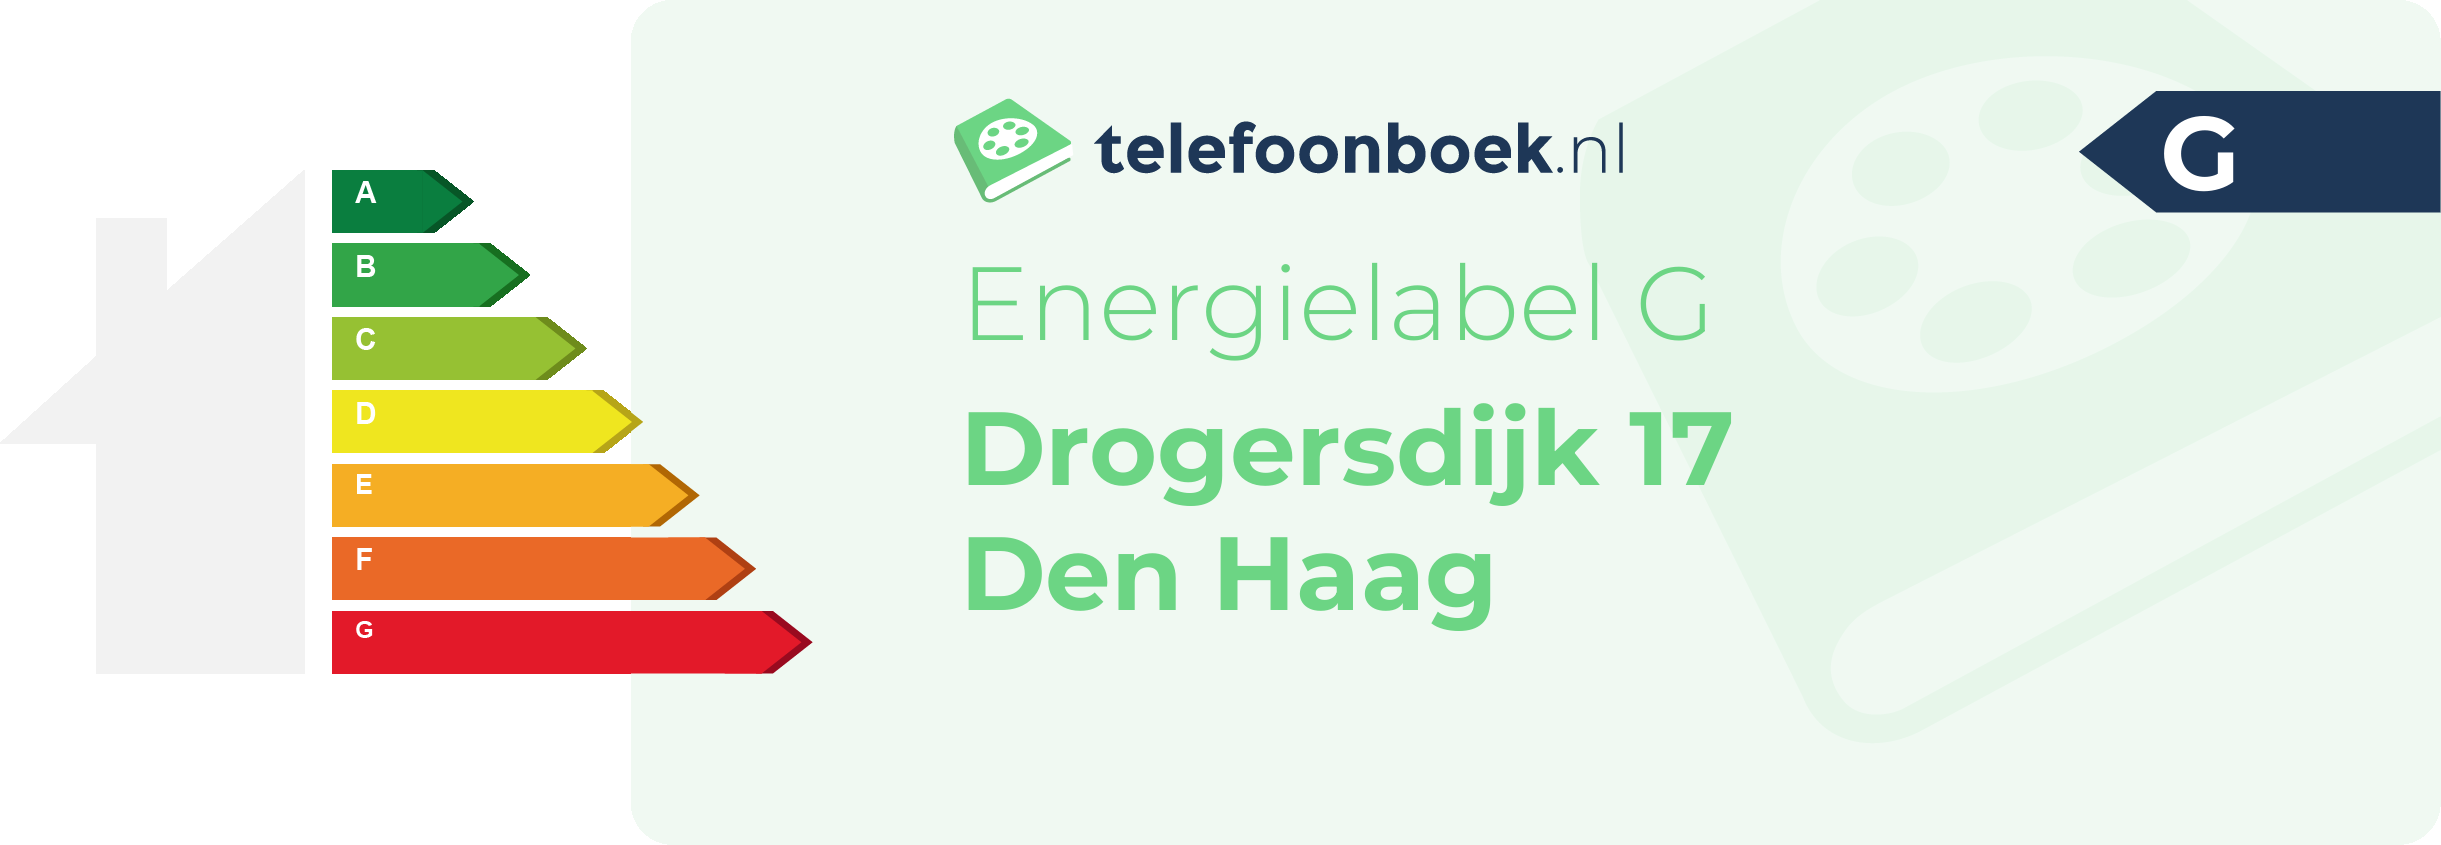 Energielabel Drogersdijk 17 Den Haag